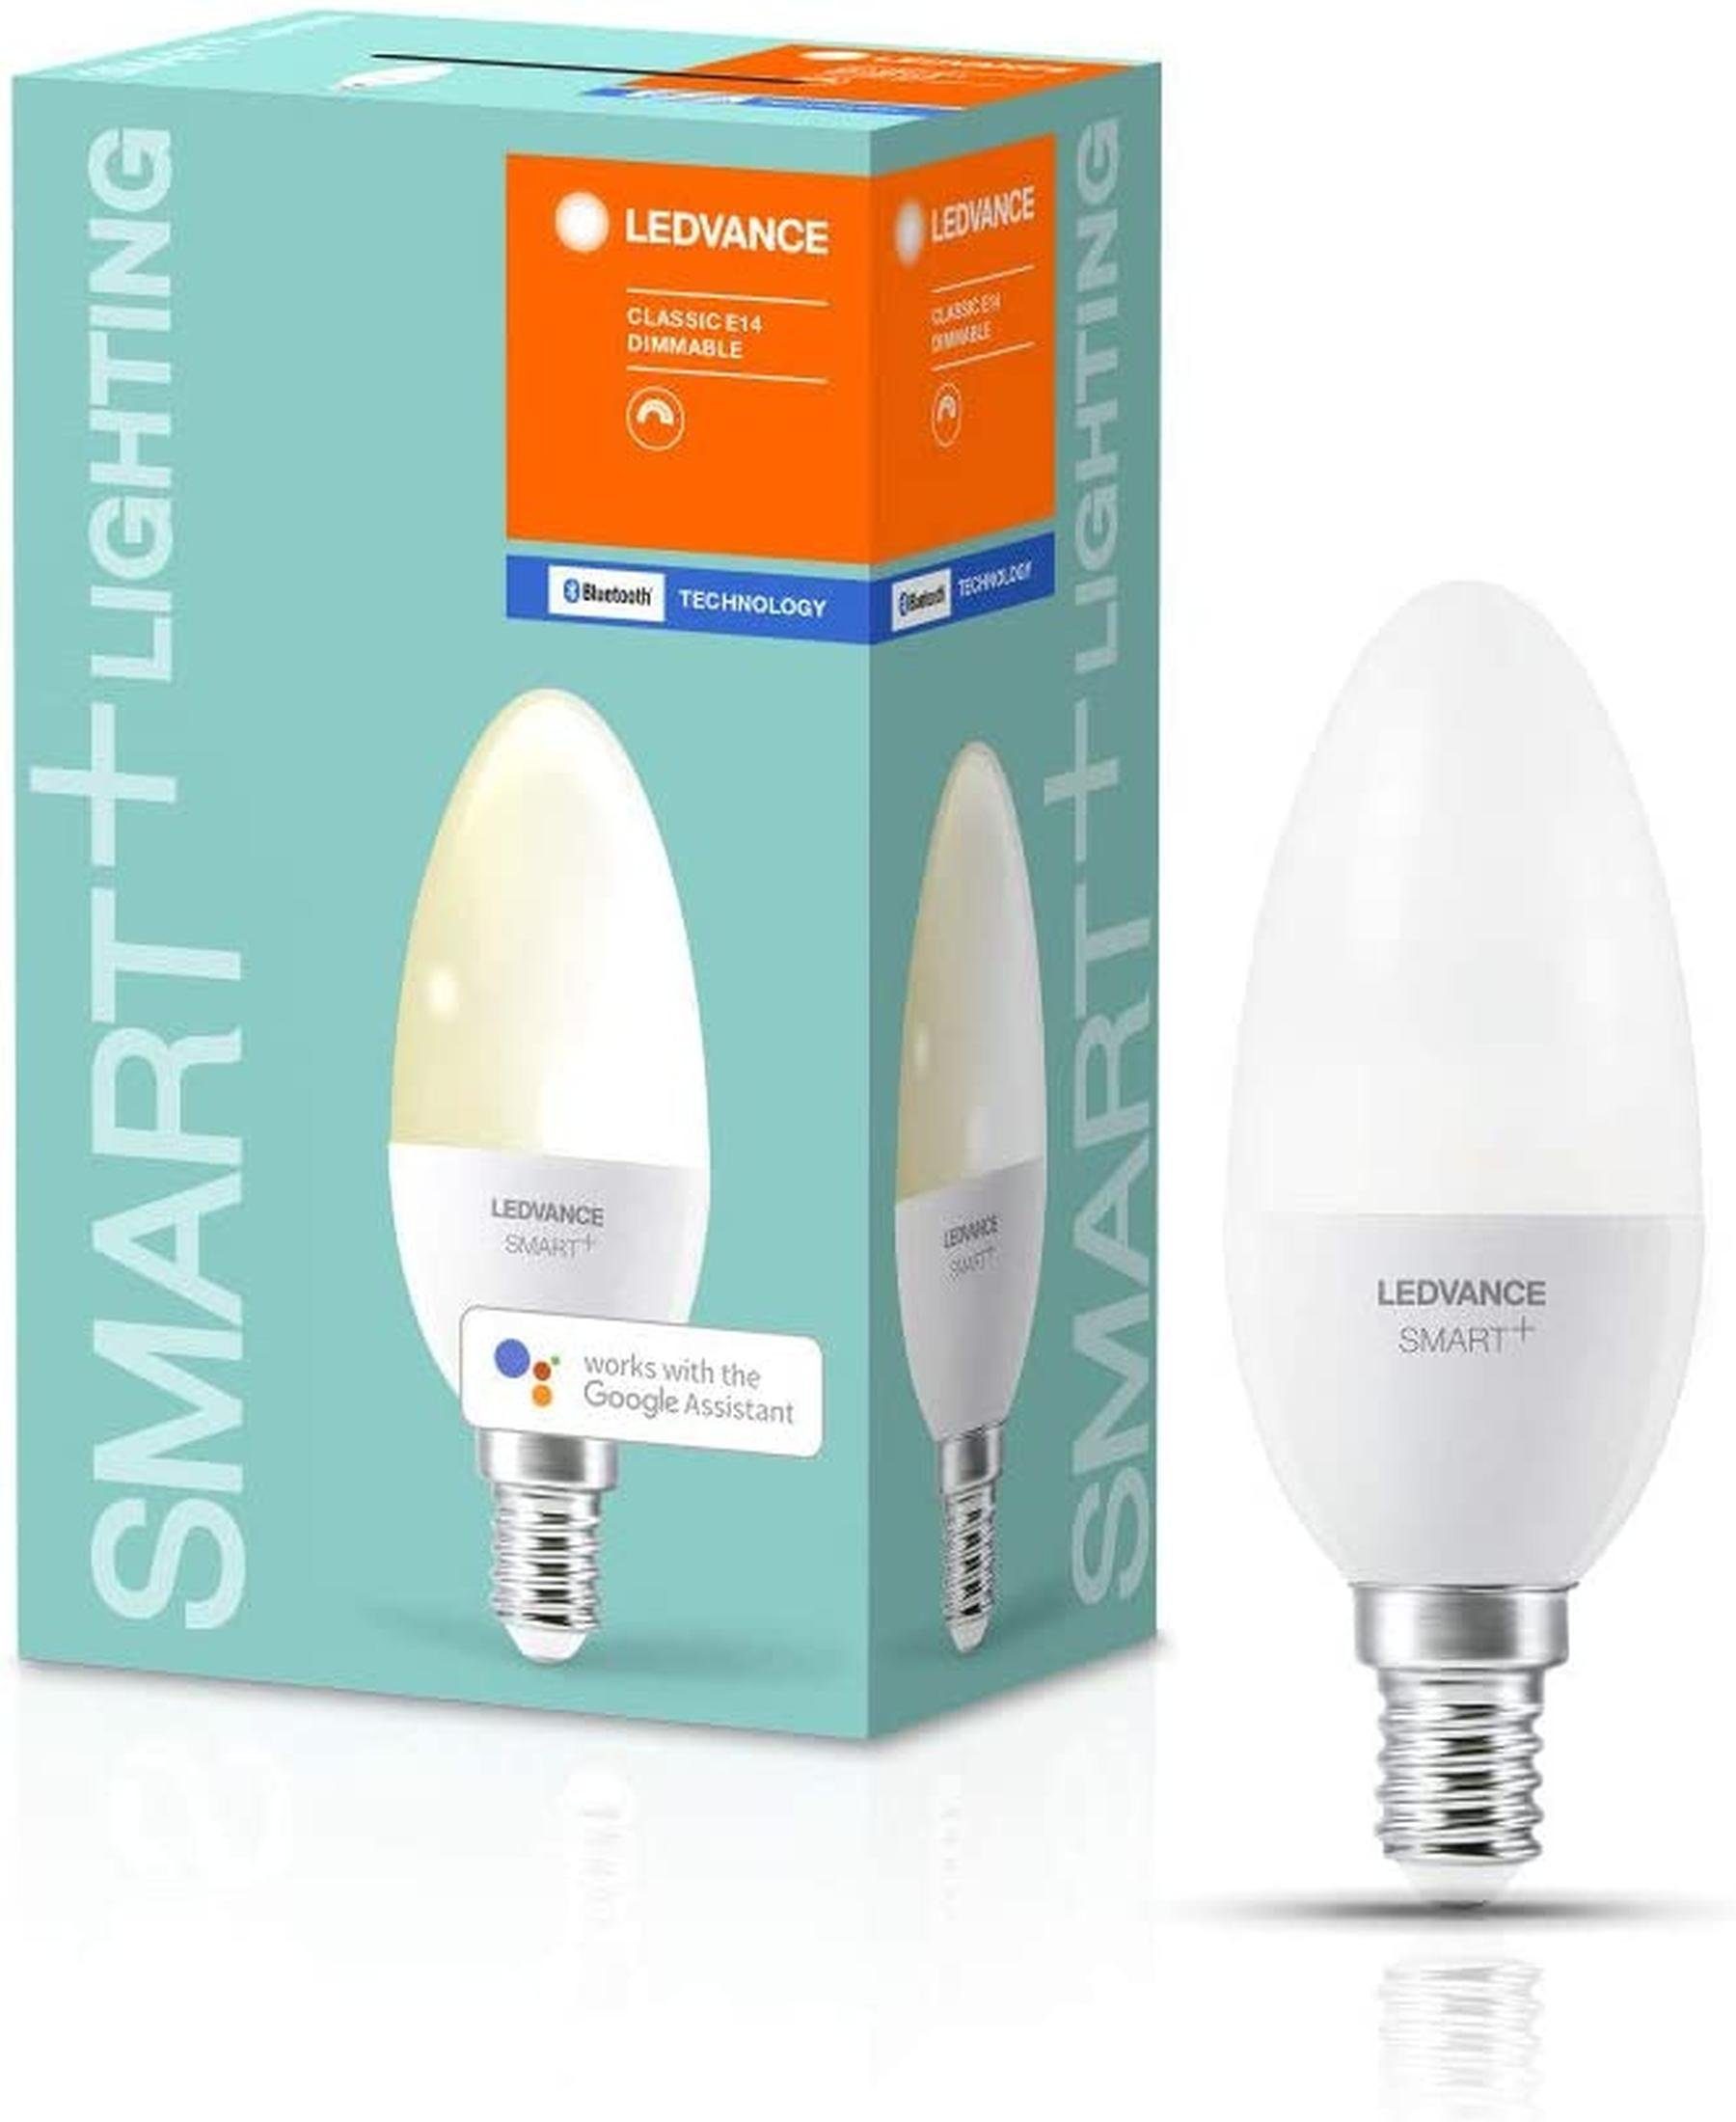 Ledvance Smarte LED-Leuchte SMARTEplus LED Leuchte, Lampe, E14 Leuchte  Licht mit Bluetooth Mesh Technologie Sockel Dimmbar, LED fest integriert, warm  weiß, Enthält kein Quecksilber, Zuverlässiger Betrieb dank Markenqualität,  Einfache Installation und